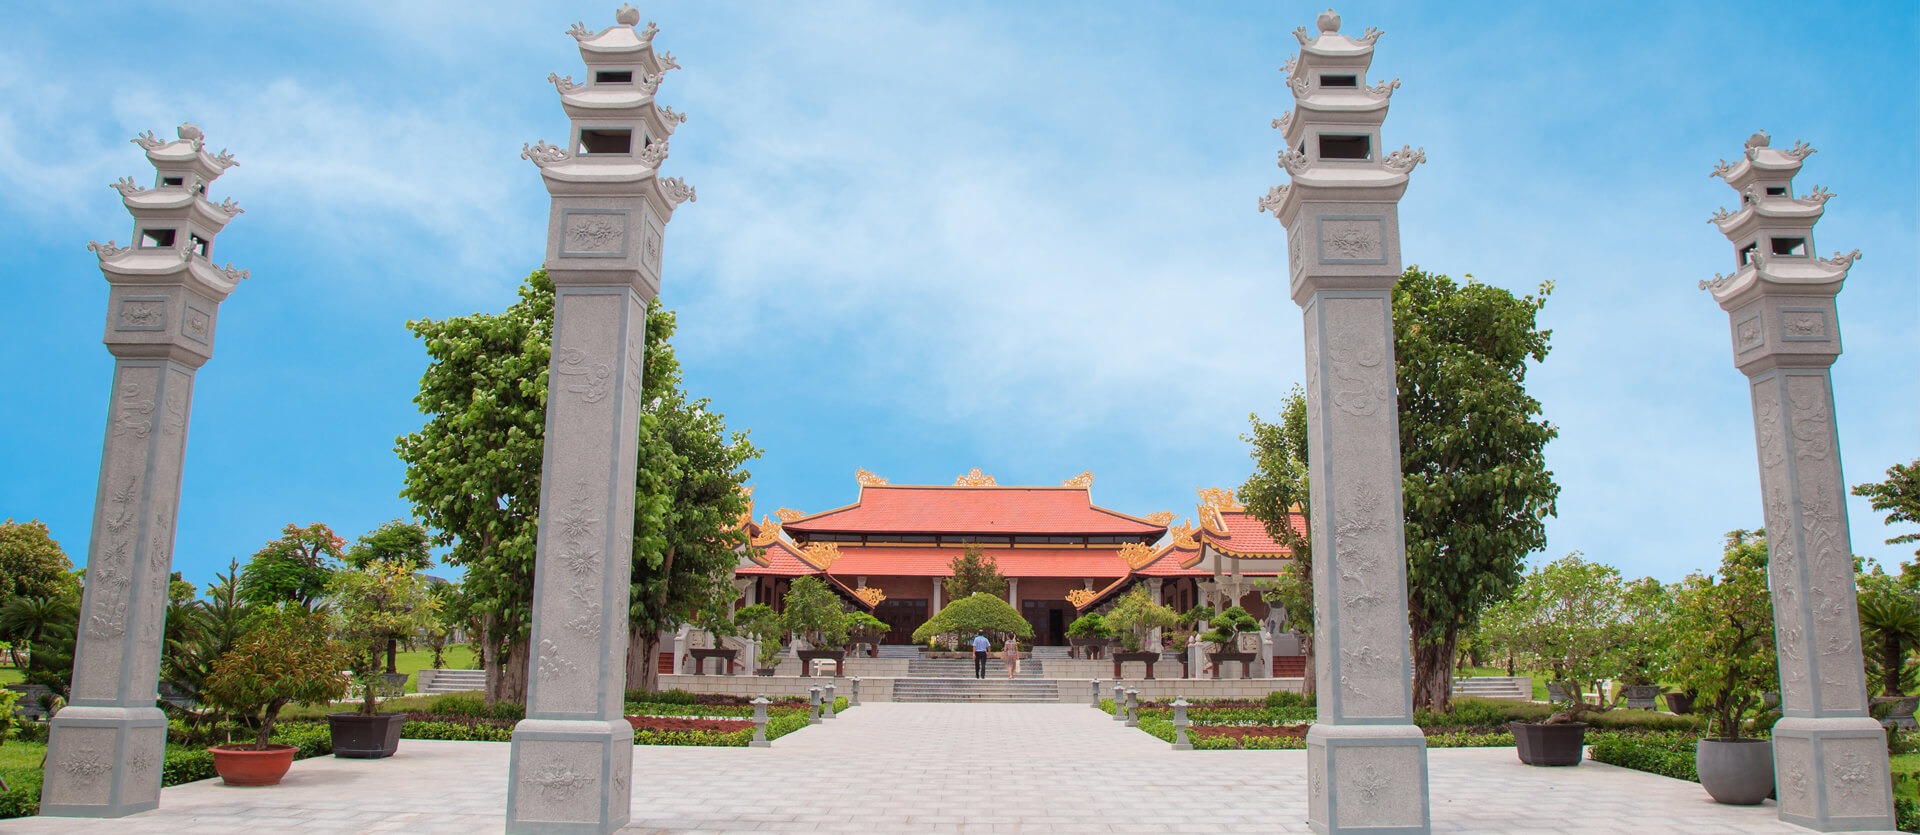 Thiền viện Sala Garden mang đậm văn hóa Á Đông cùng kiến trúc Phật giáo